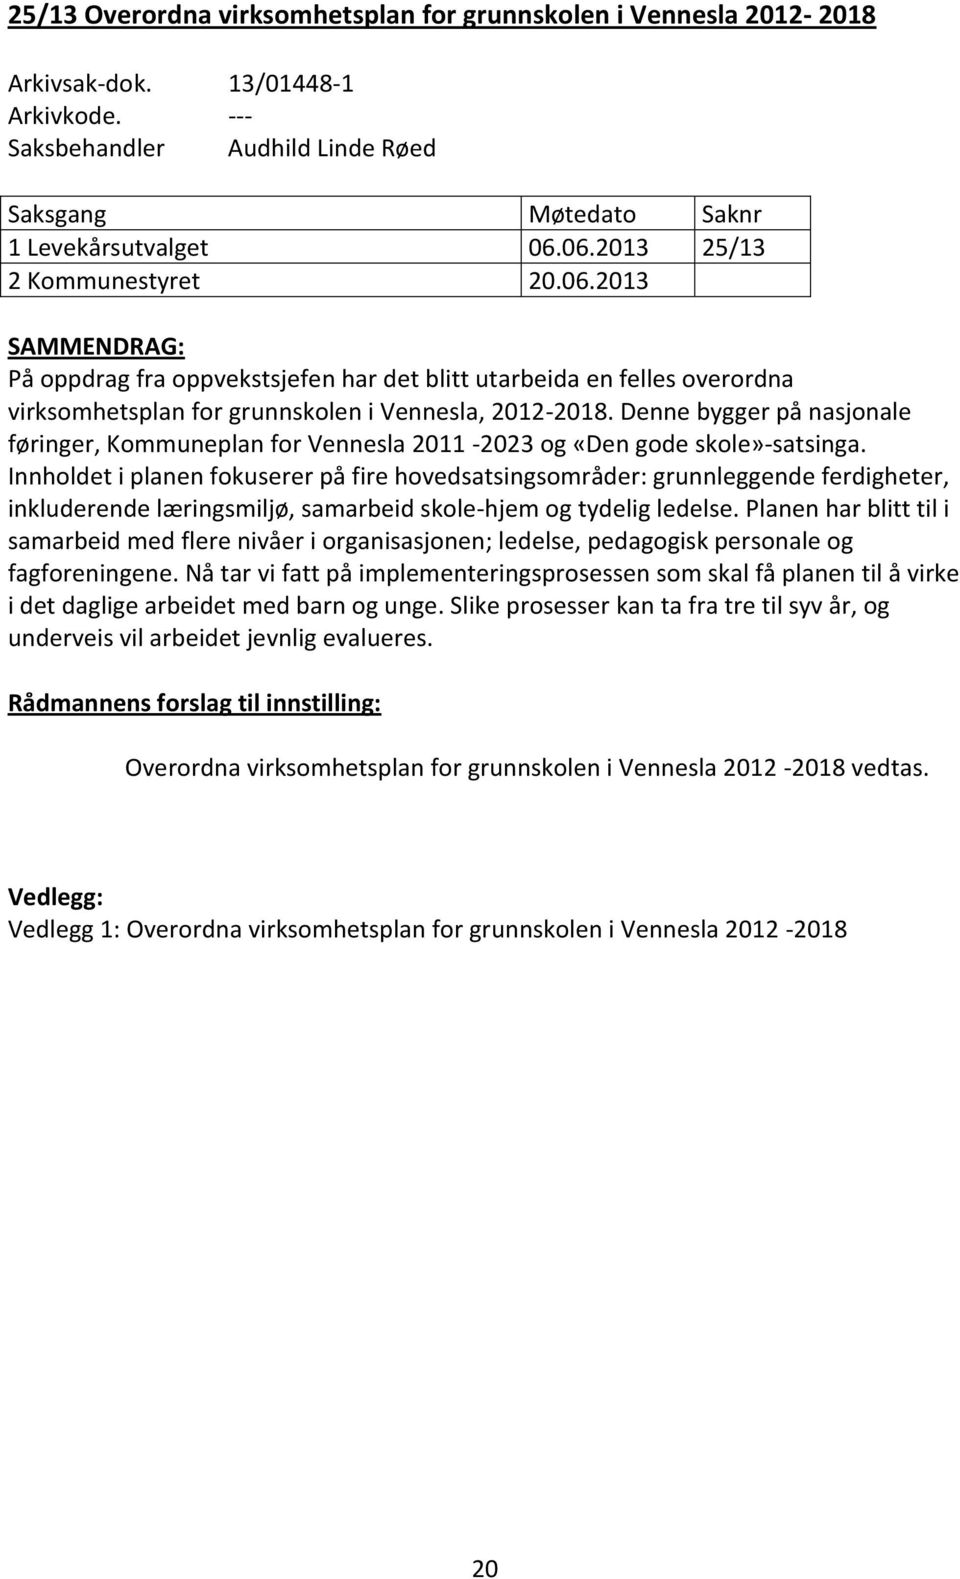 Denne bygger på nasjonale føringer, Kommuneplan for Vennesla 2011-2023 og «Den gode skole»-satsinga.